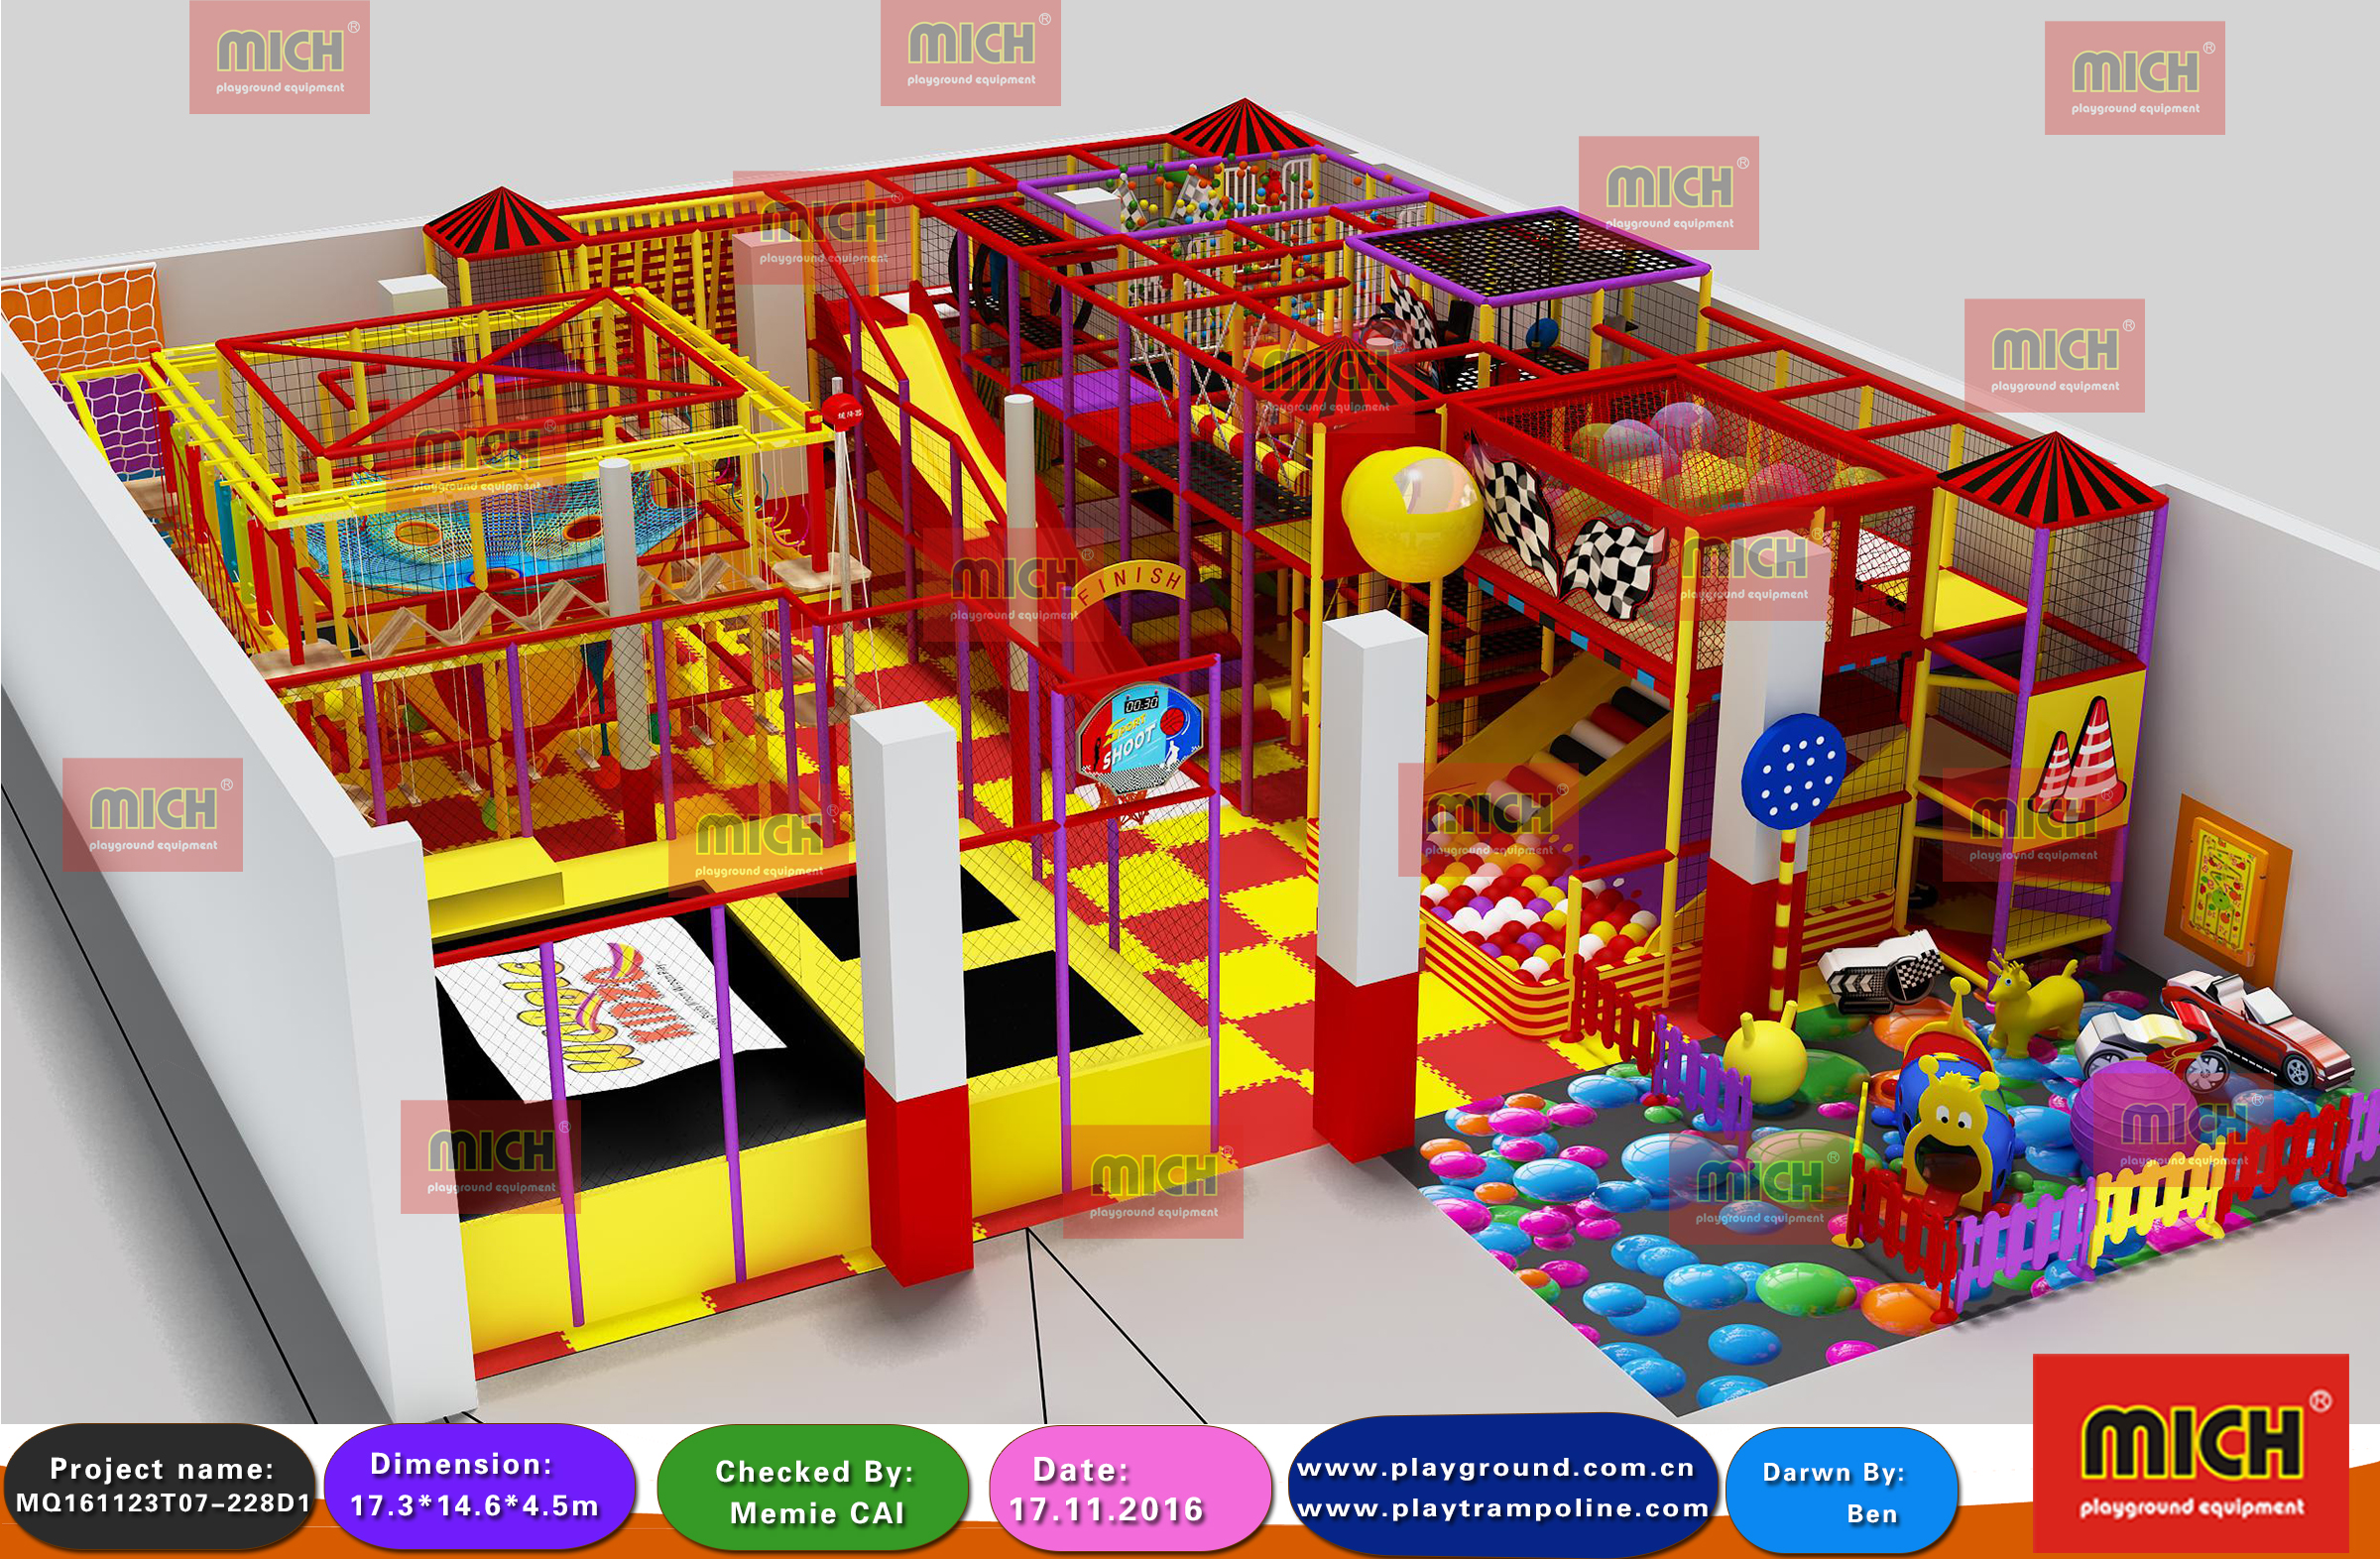 Ein neues Kids Indoor Play Center -Projekt in Indien